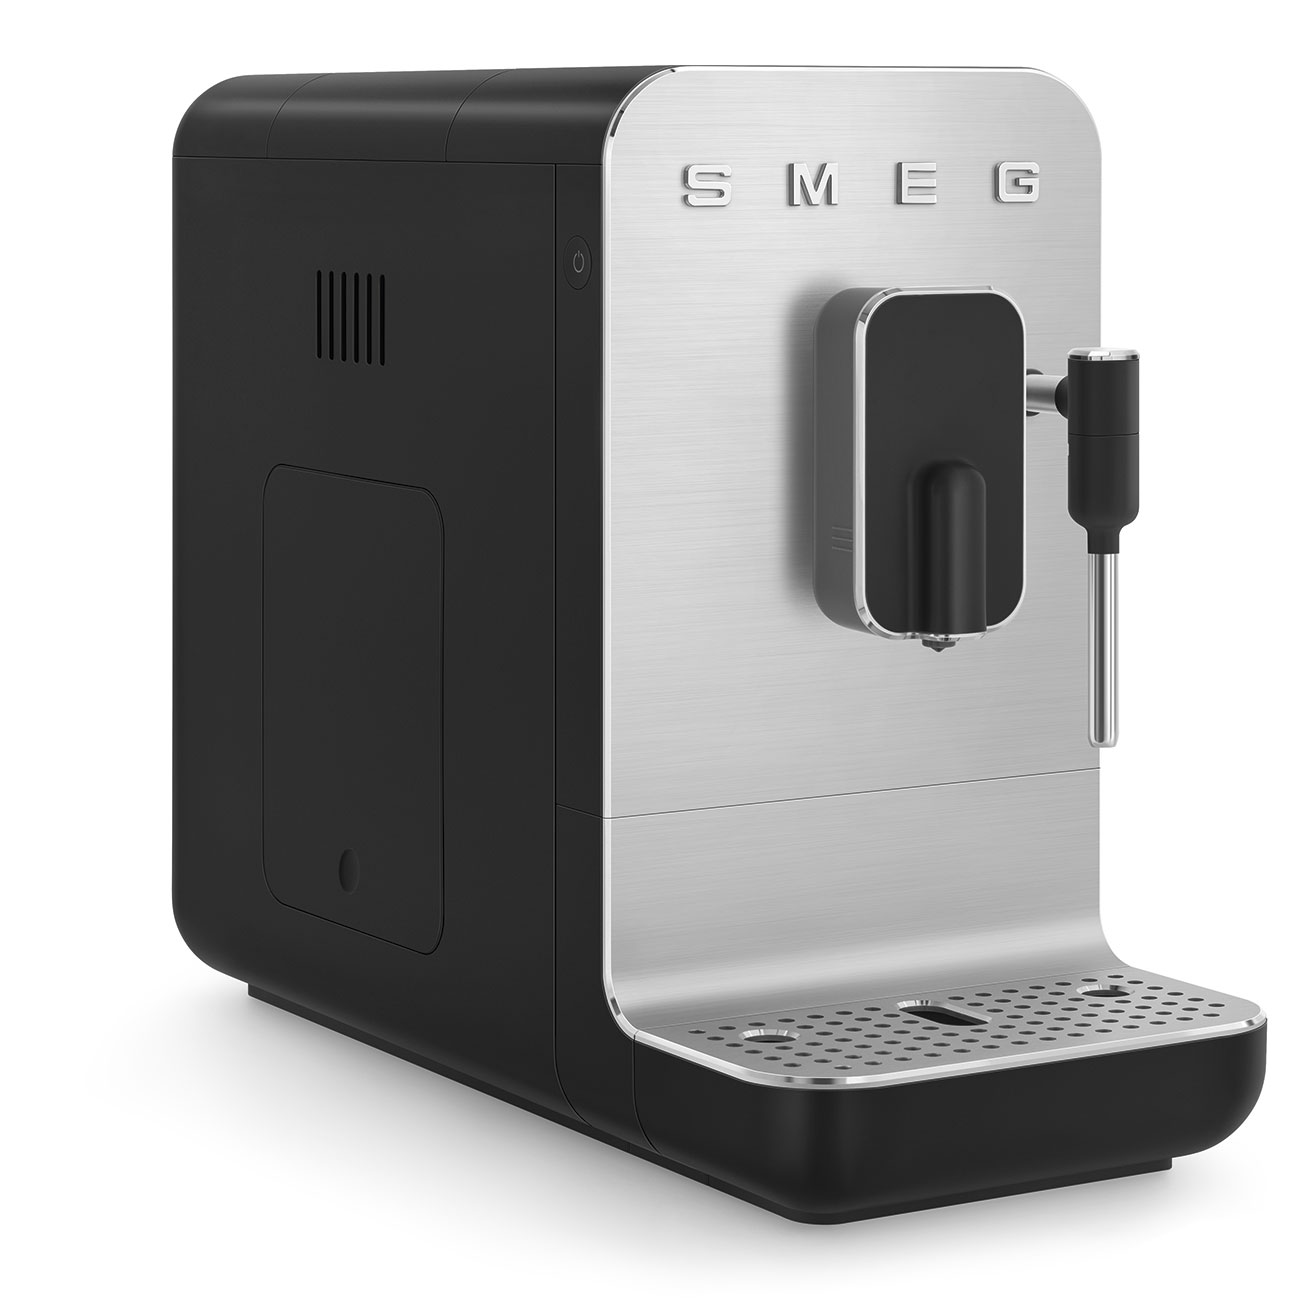 Machine broyeur à café à grain SMEG / Années 50 / SMEG